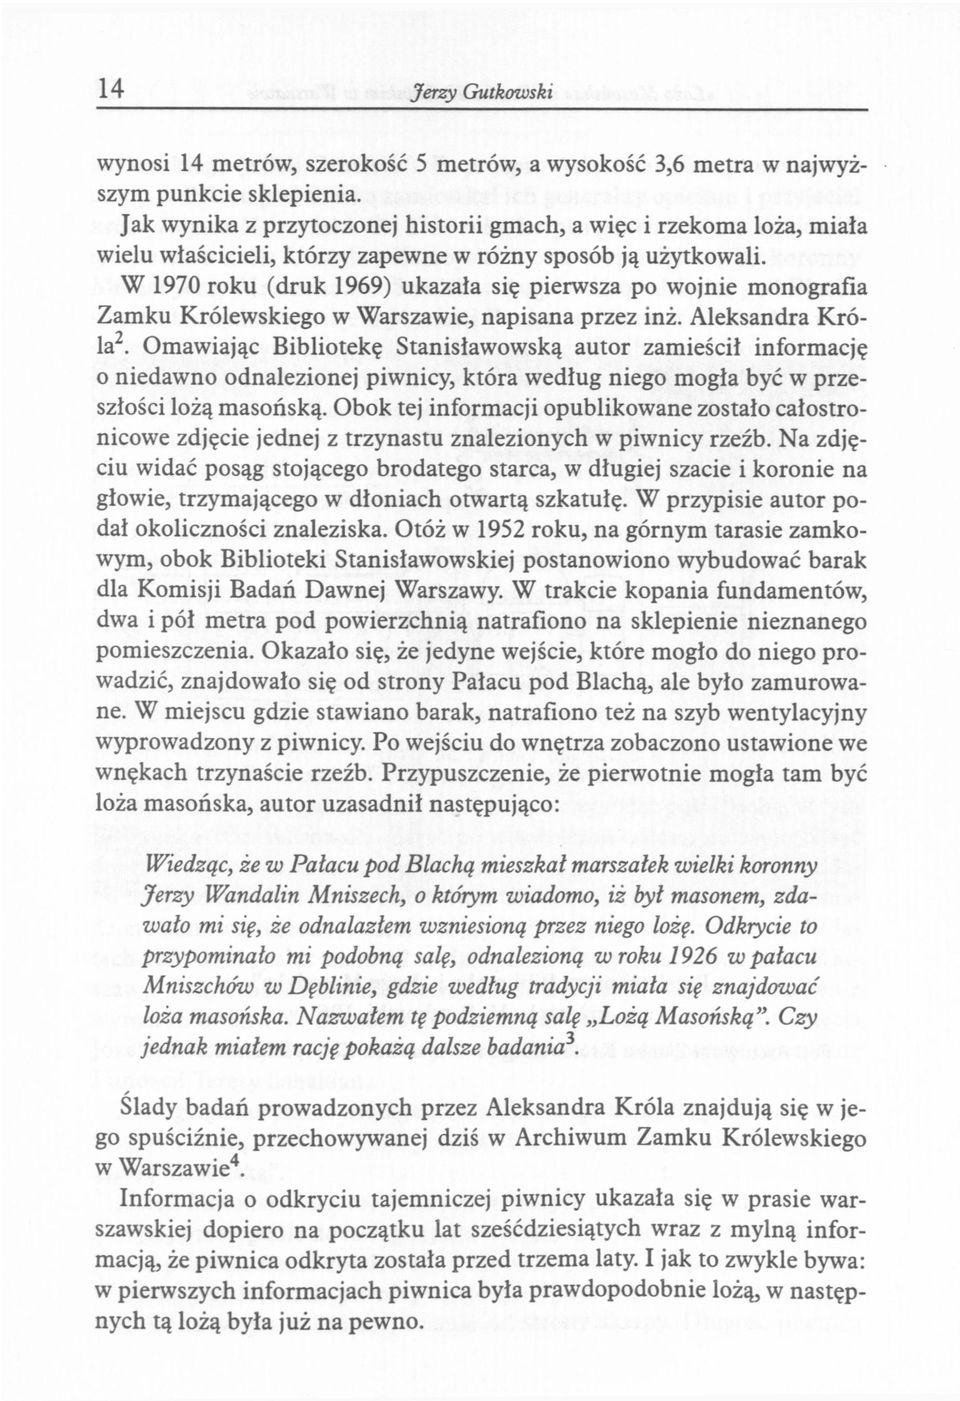 W 1970 roku (druk 1969) ukazała się pierwsza po wojnie monografia Zamku Królewskiego w Warszawie, napisana przez inż. Aleksandra Króla 2.